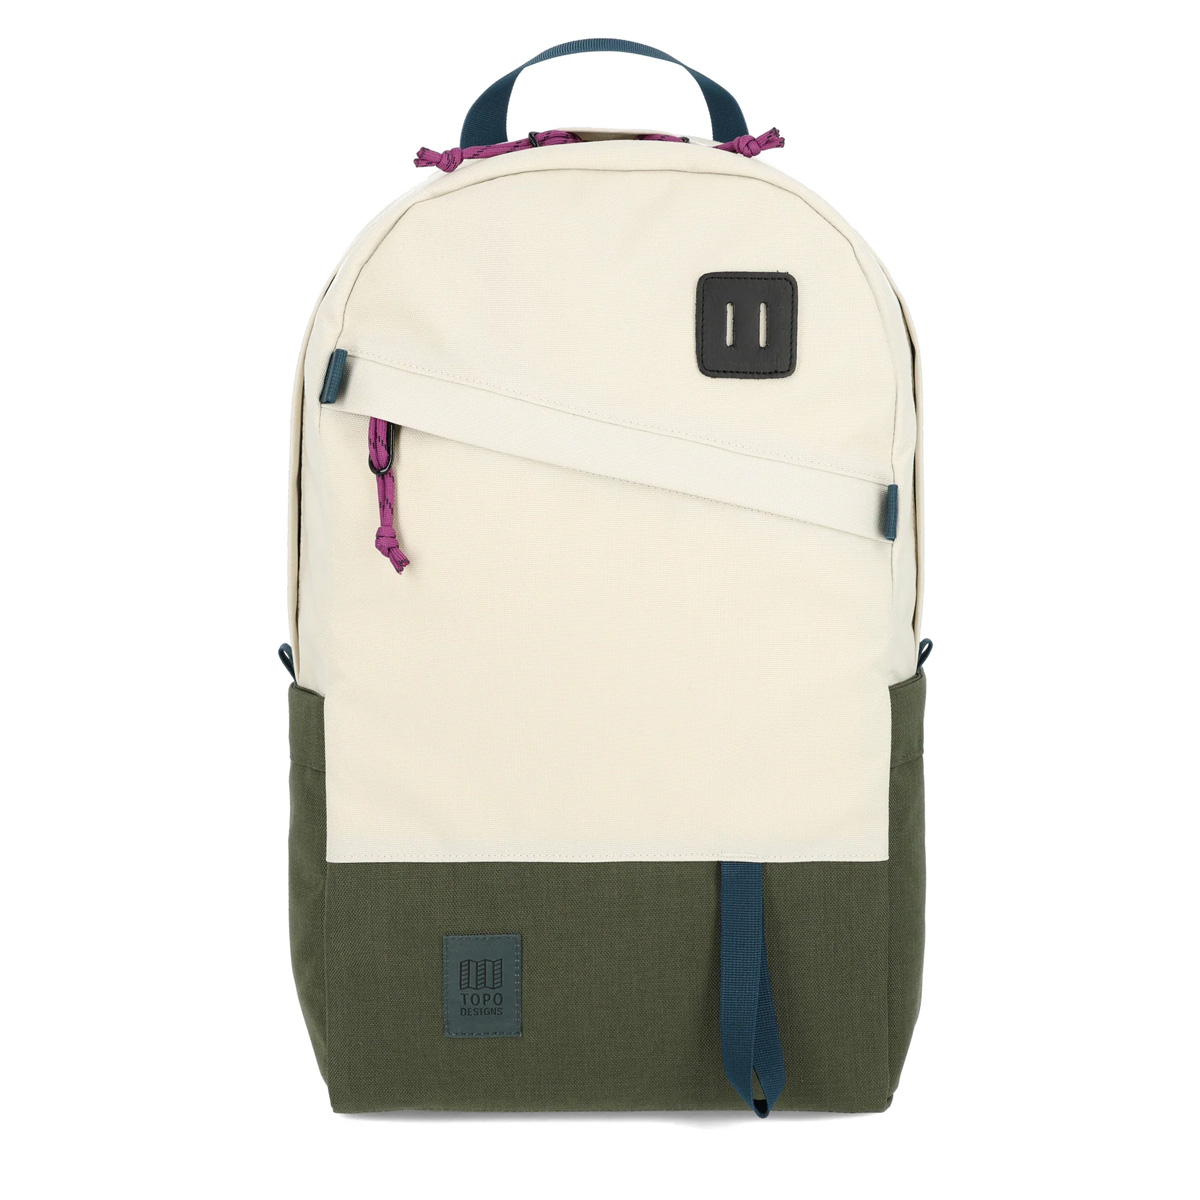 Topo Designs Daypack Classic Bone White/Olive, starker Rucksack in 1000D Nylon mit 15 Zoll Laptopfach und 21.6 Liter Stauraum